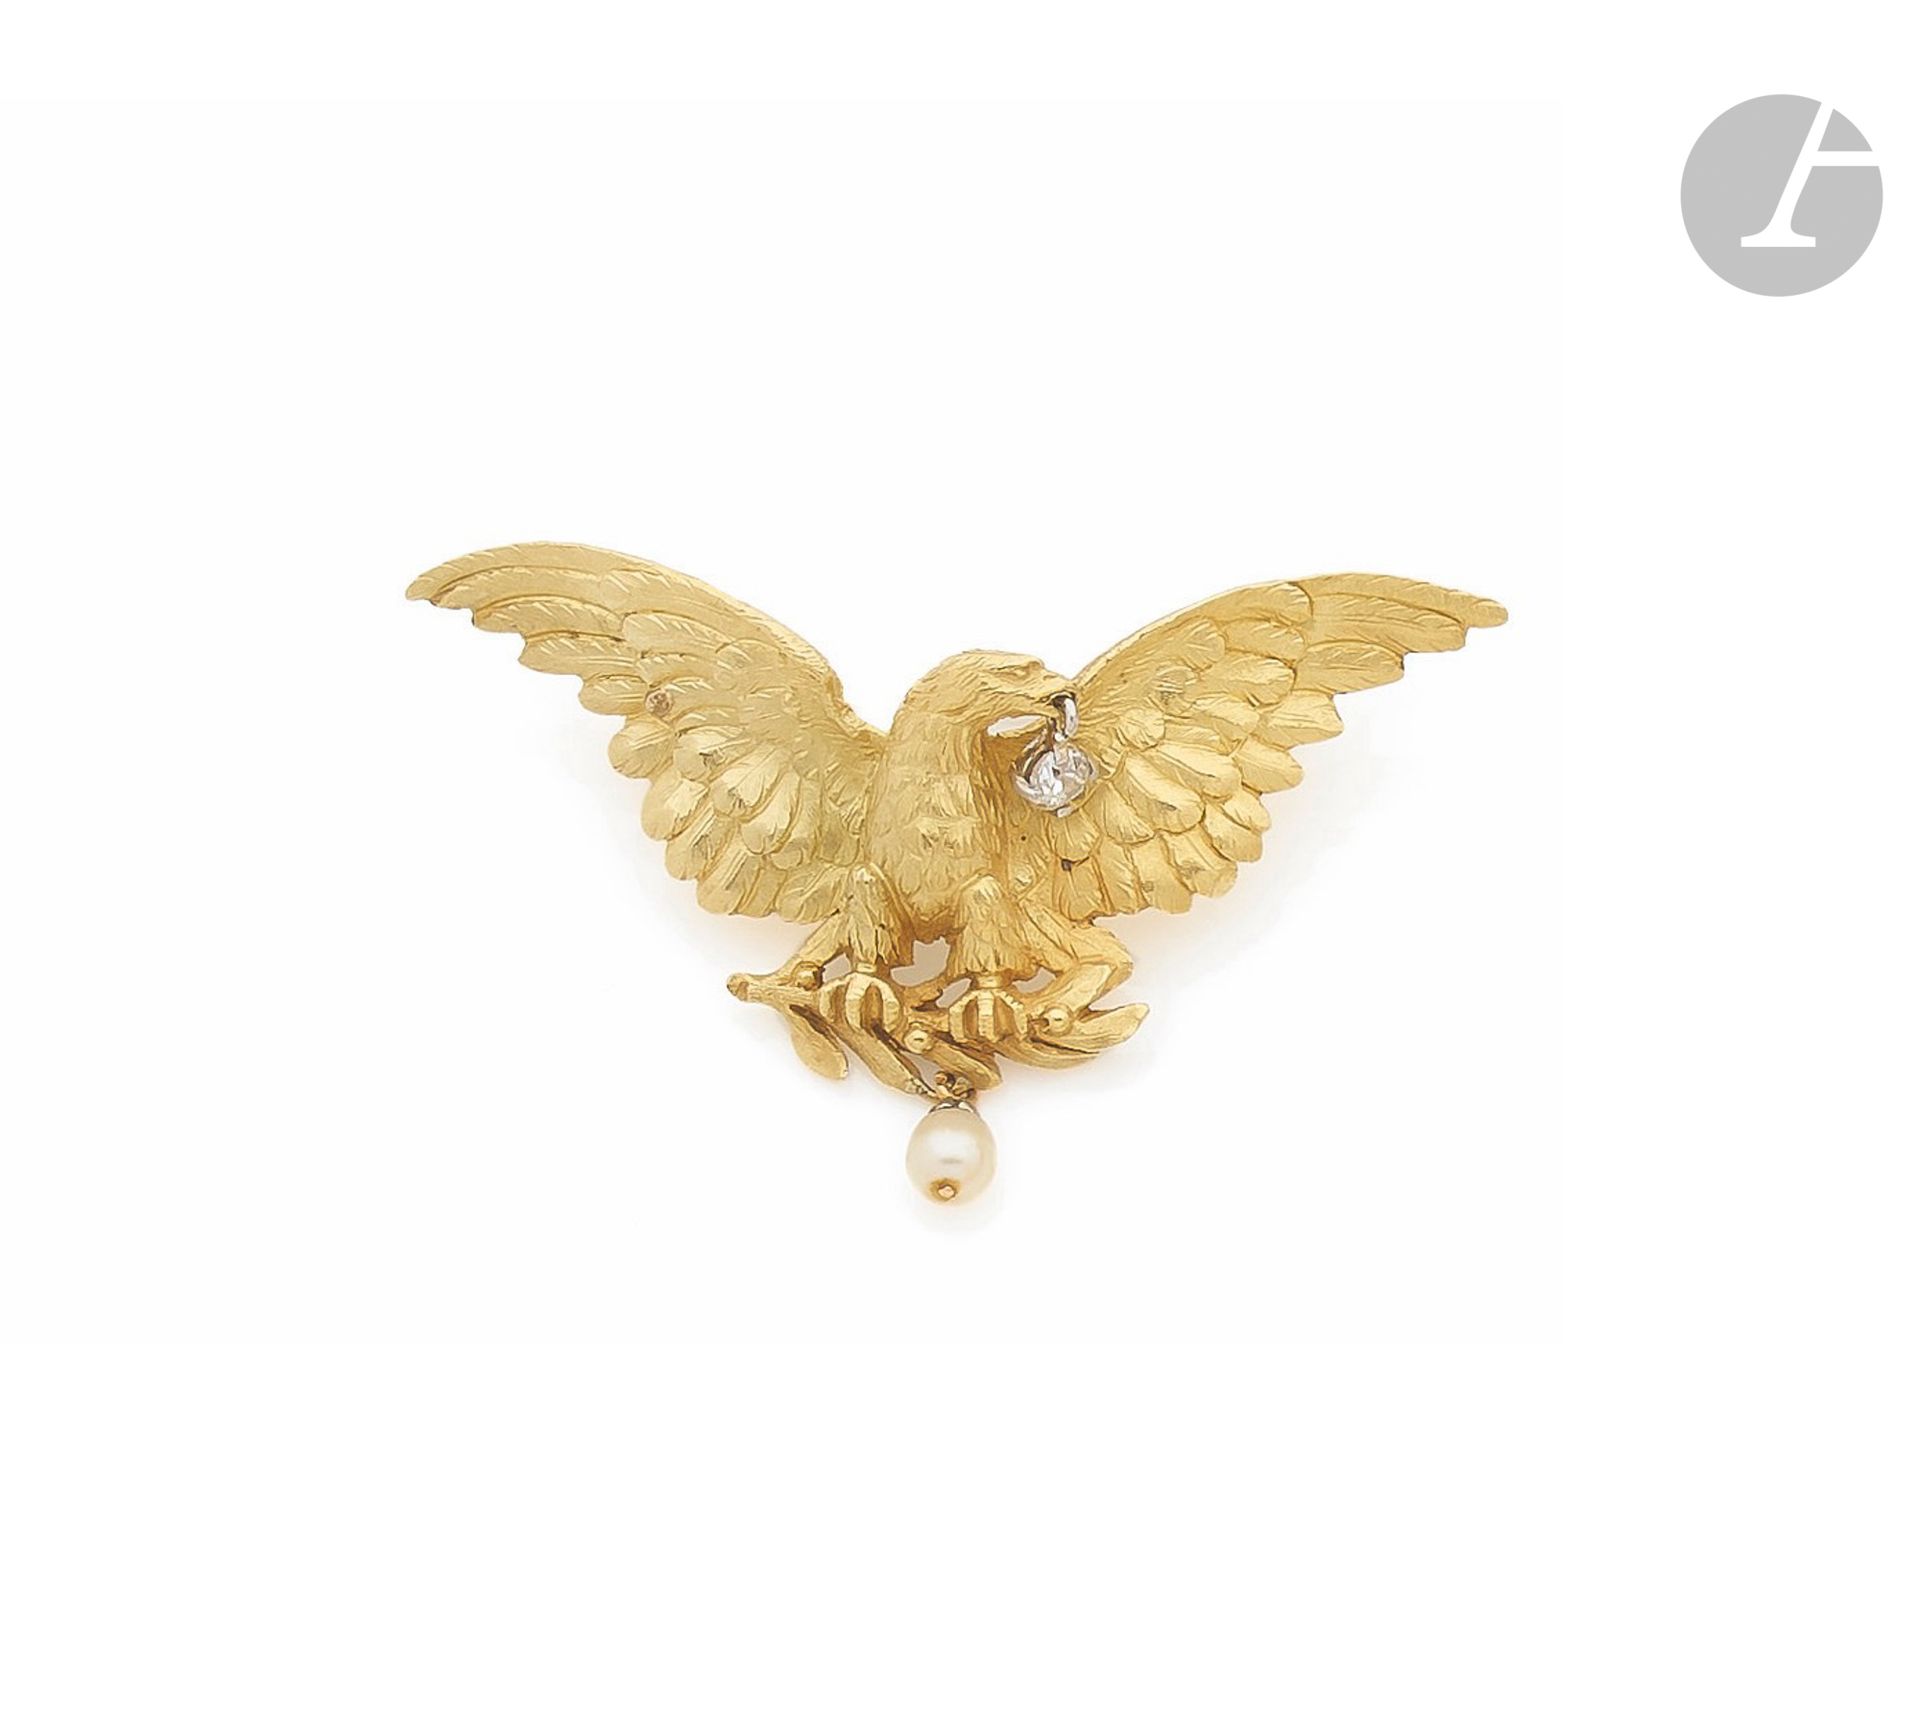 Null Broschenanhänger aus 18 Karat Gold (750), der einen Adler mit ausgebreitete&hellip;